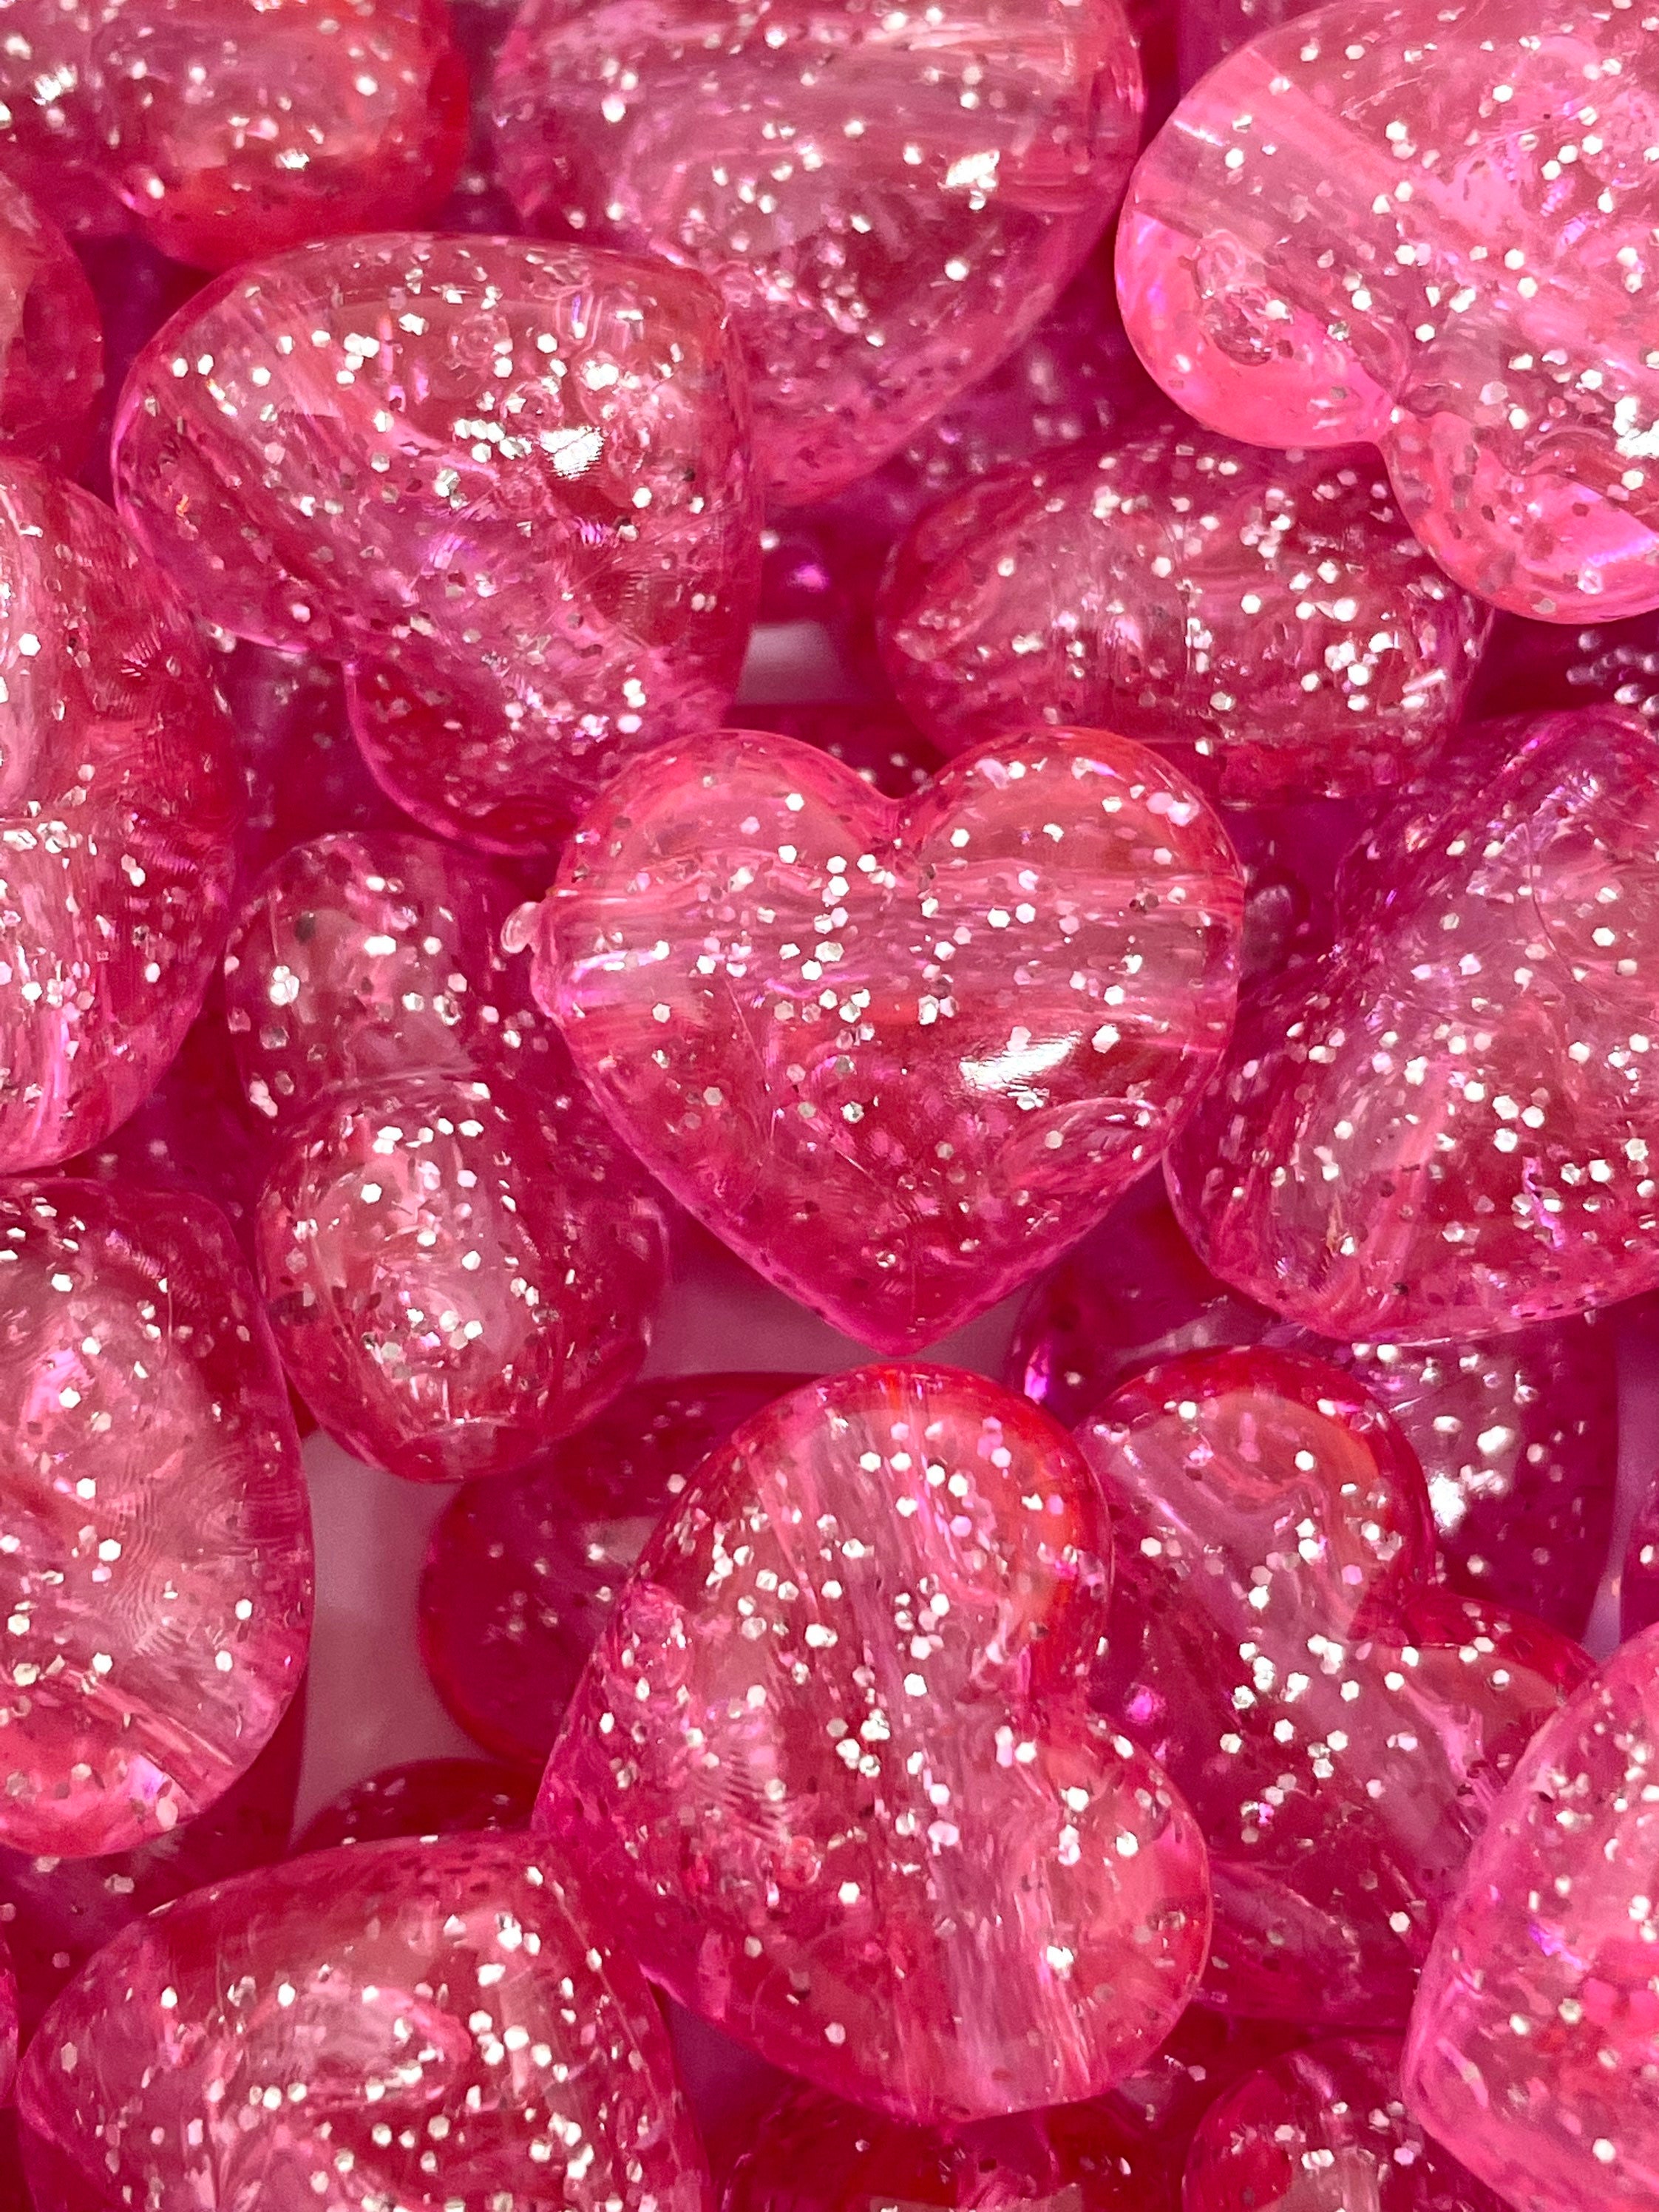 Deep Pink Heart Beads 18mm Rose Pink Glitter Puffy Heart Acrylic